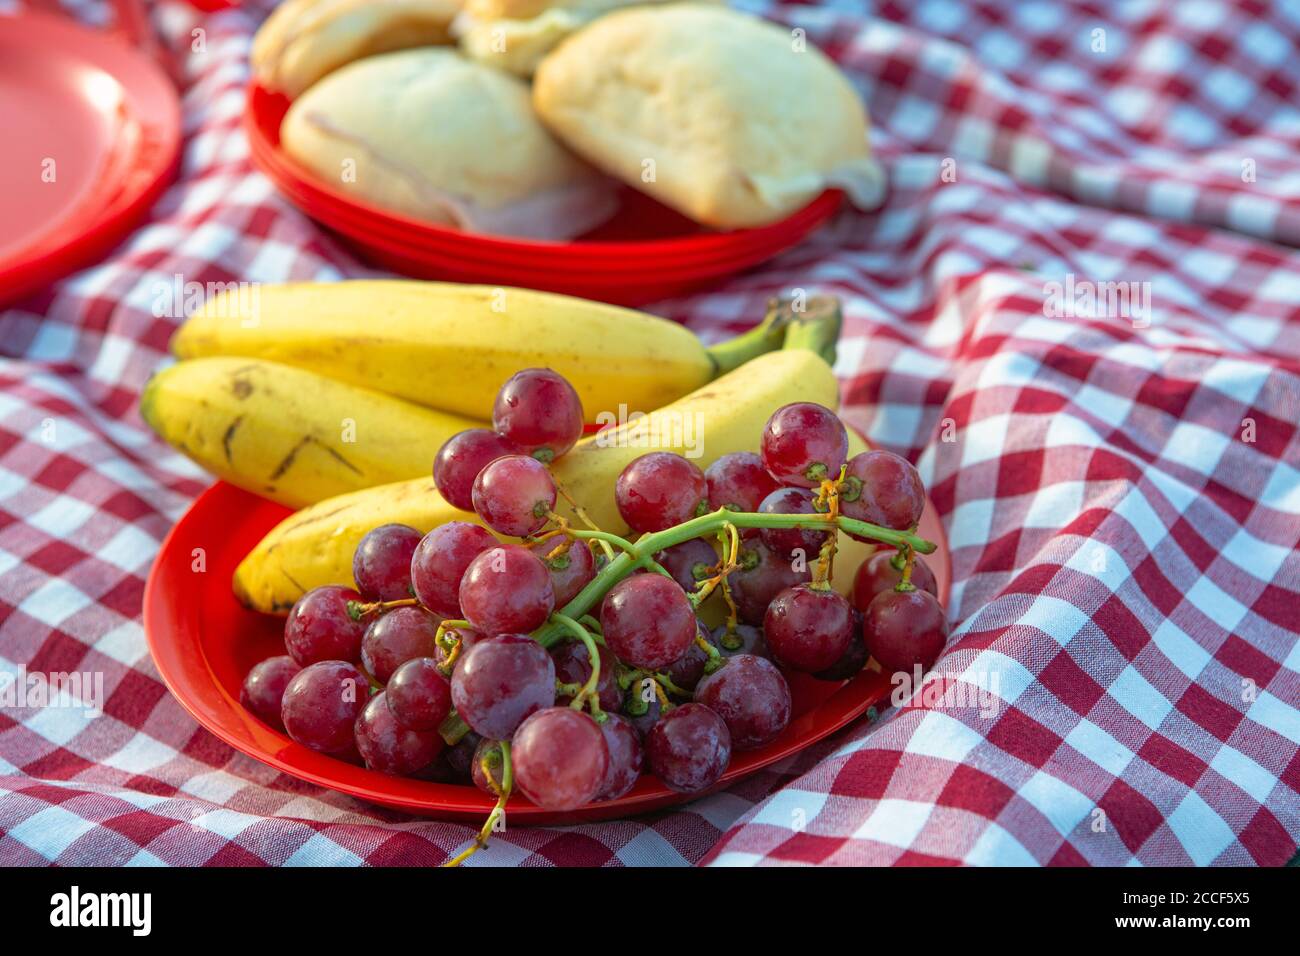 Wiederverwendbare Teller mit Brot, Obst, Banane, Trauben auf einer typischen rot-weiß karierten Camping-Tischdecke platziert, Stockfoto